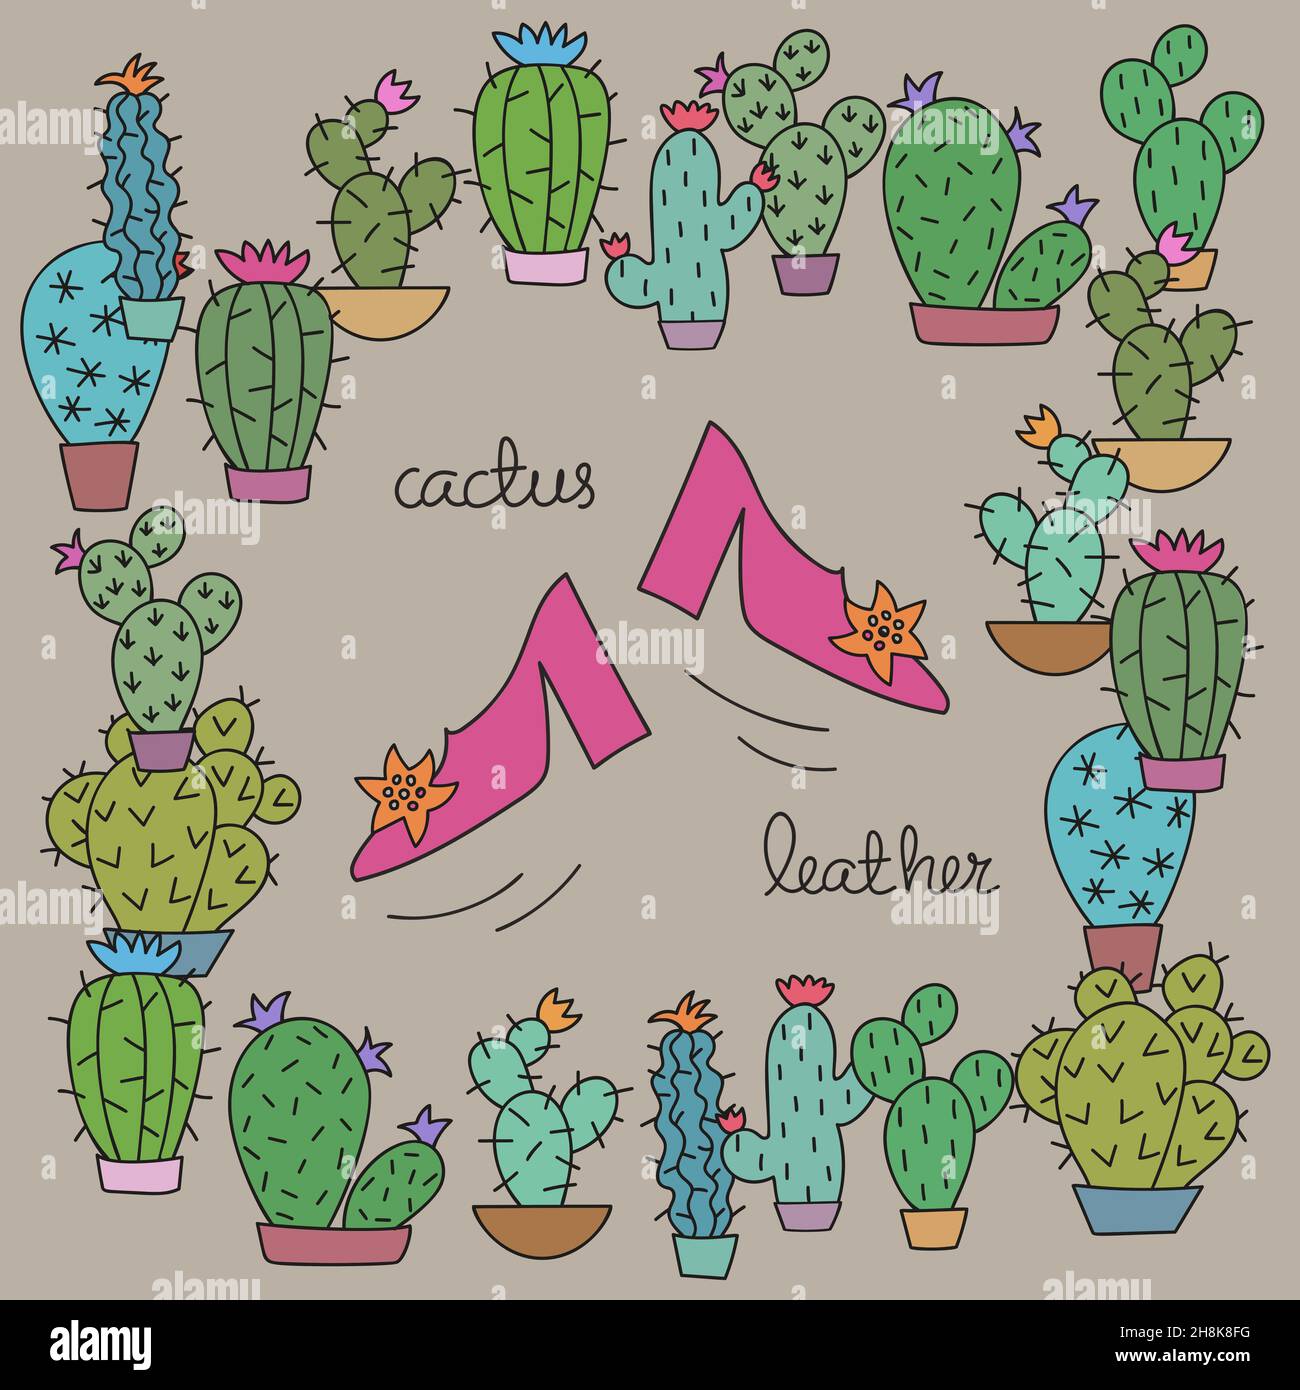 Kaktusleder. Rosa Schuhe umgeben von verschiedenen Kaktuspflanzen auf grauem Hintergrund. Stock Vektor